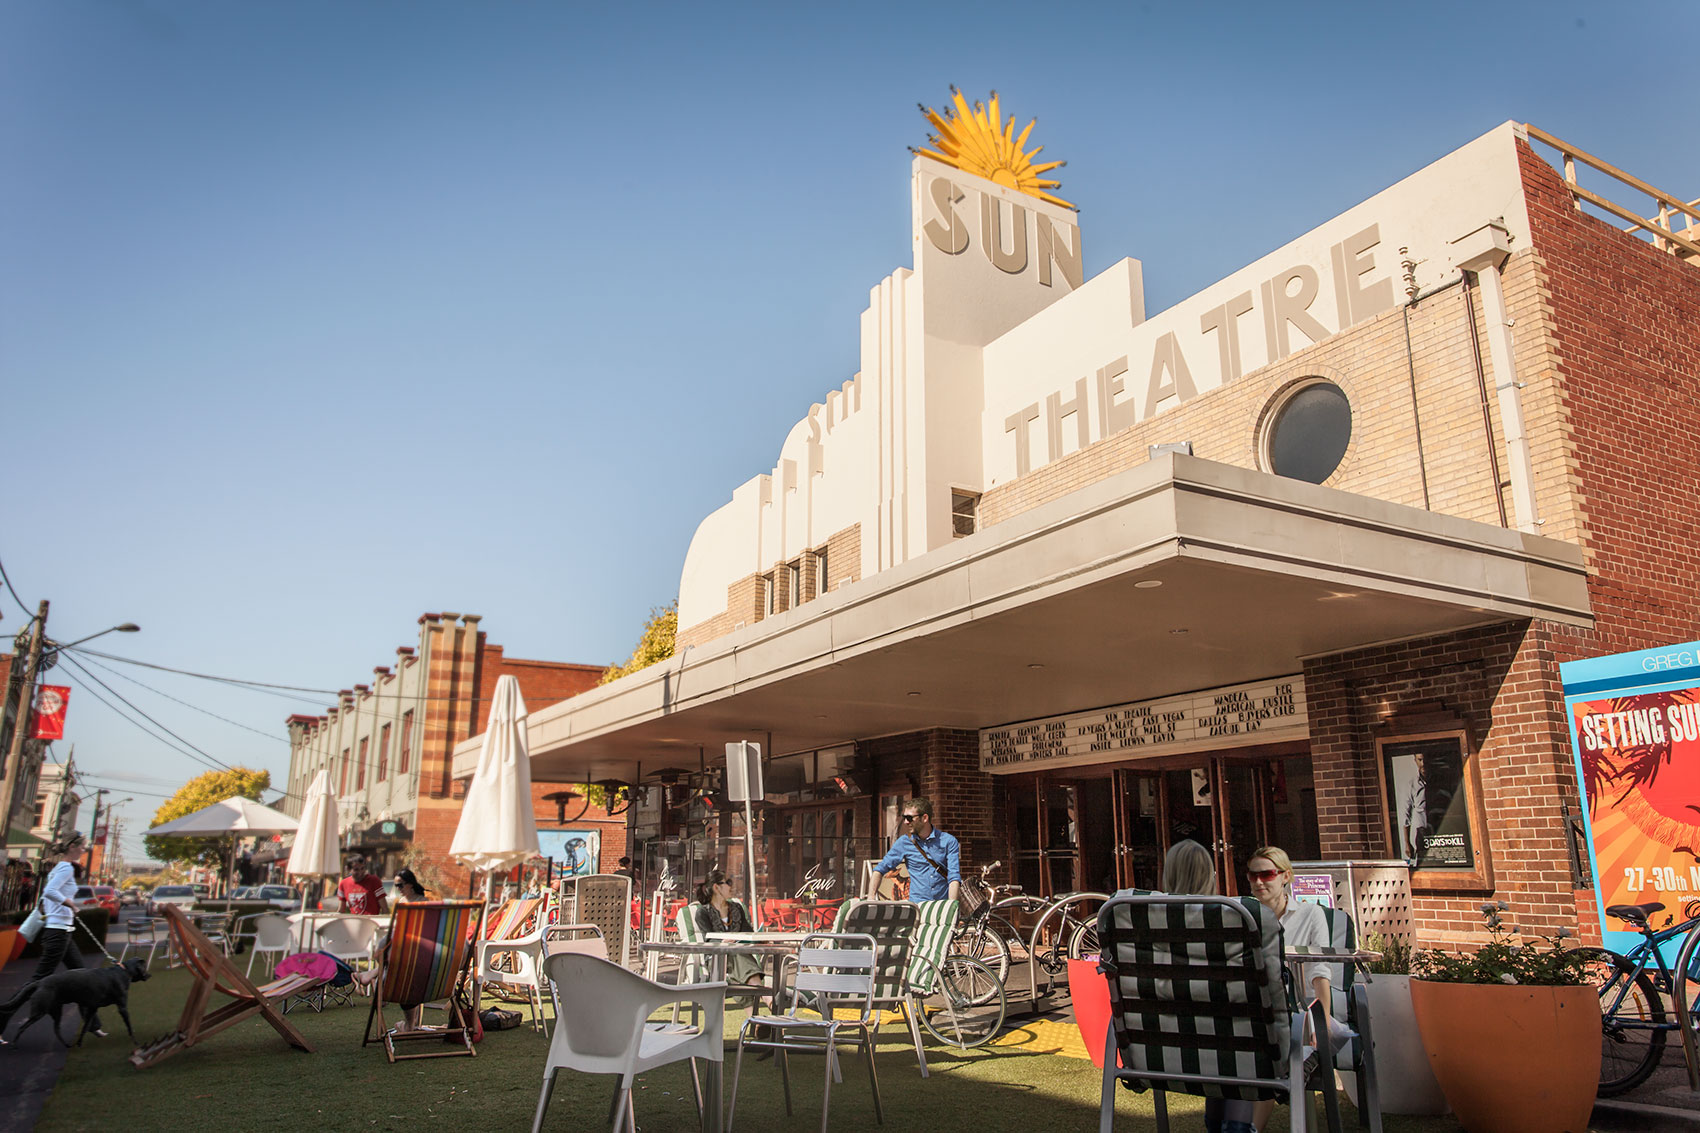 The Sun Theatre